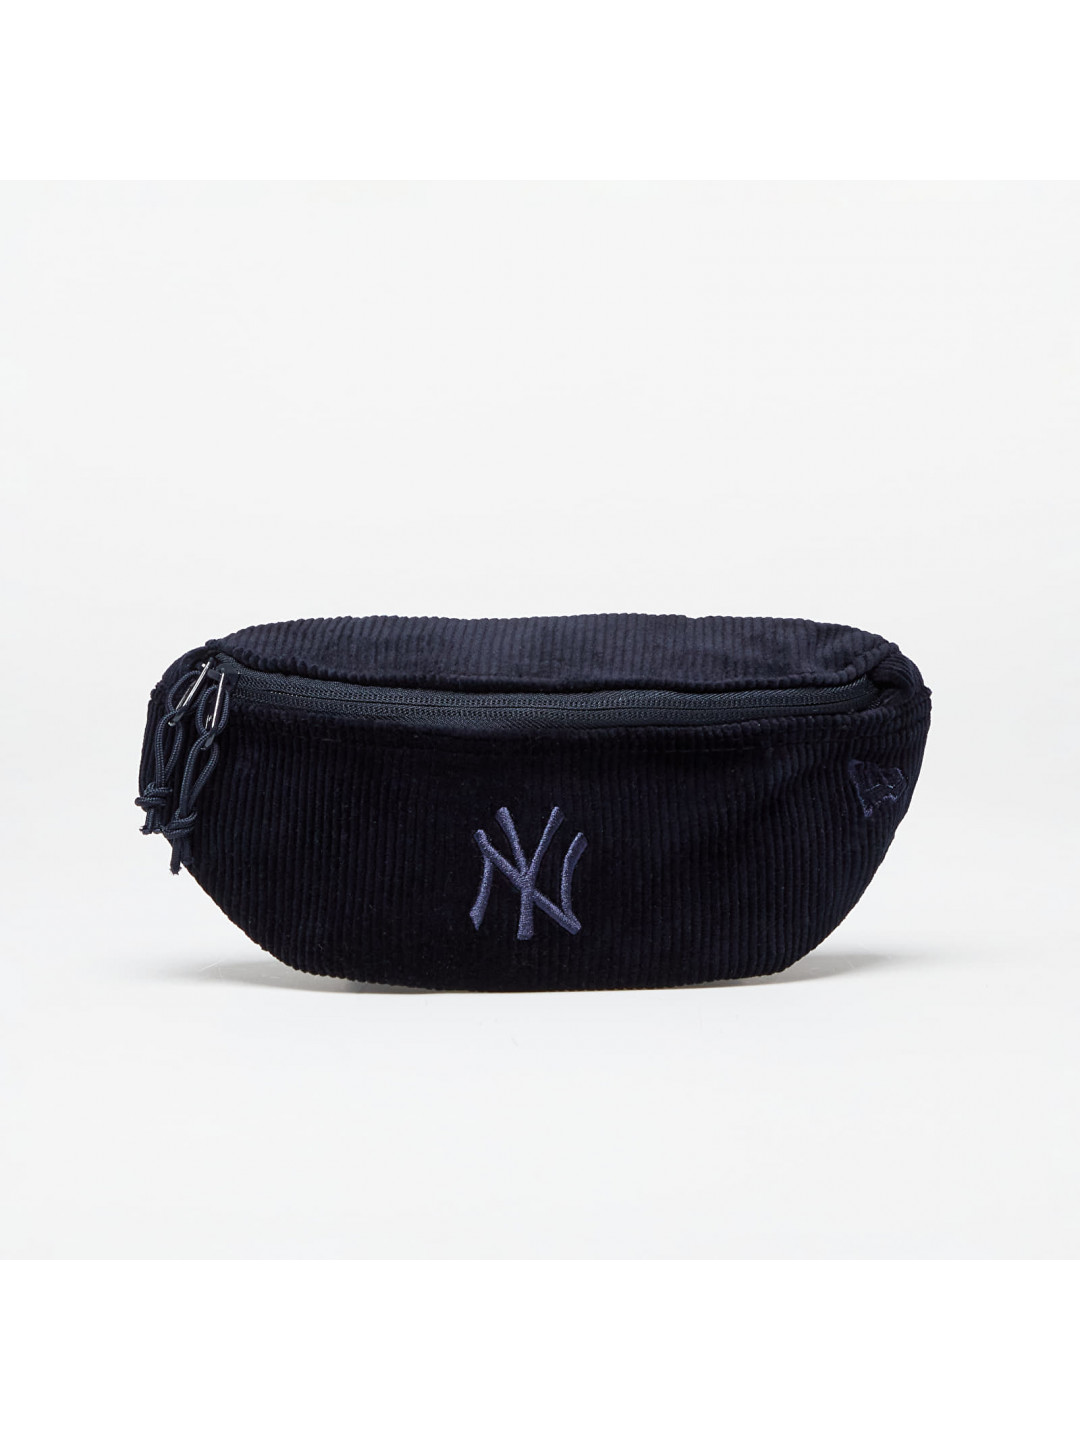 New Era MLB Cord Mini Waist Bag New York Yankees Navy Navy